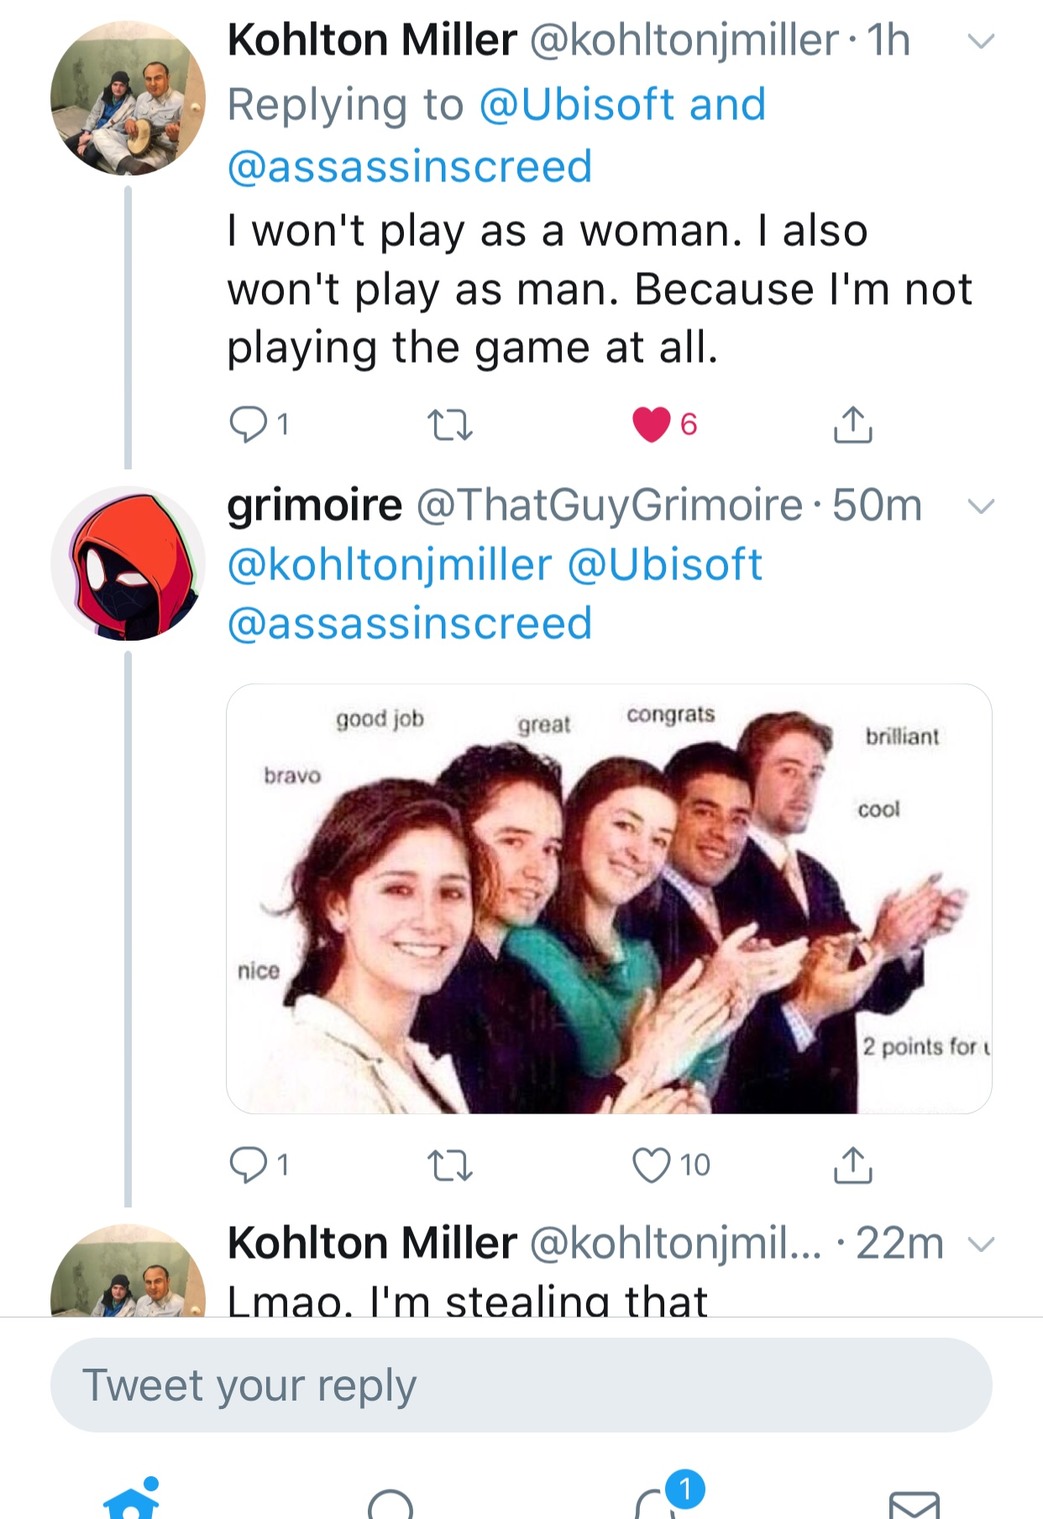 3rd Comment is Kohlton Miller - meme